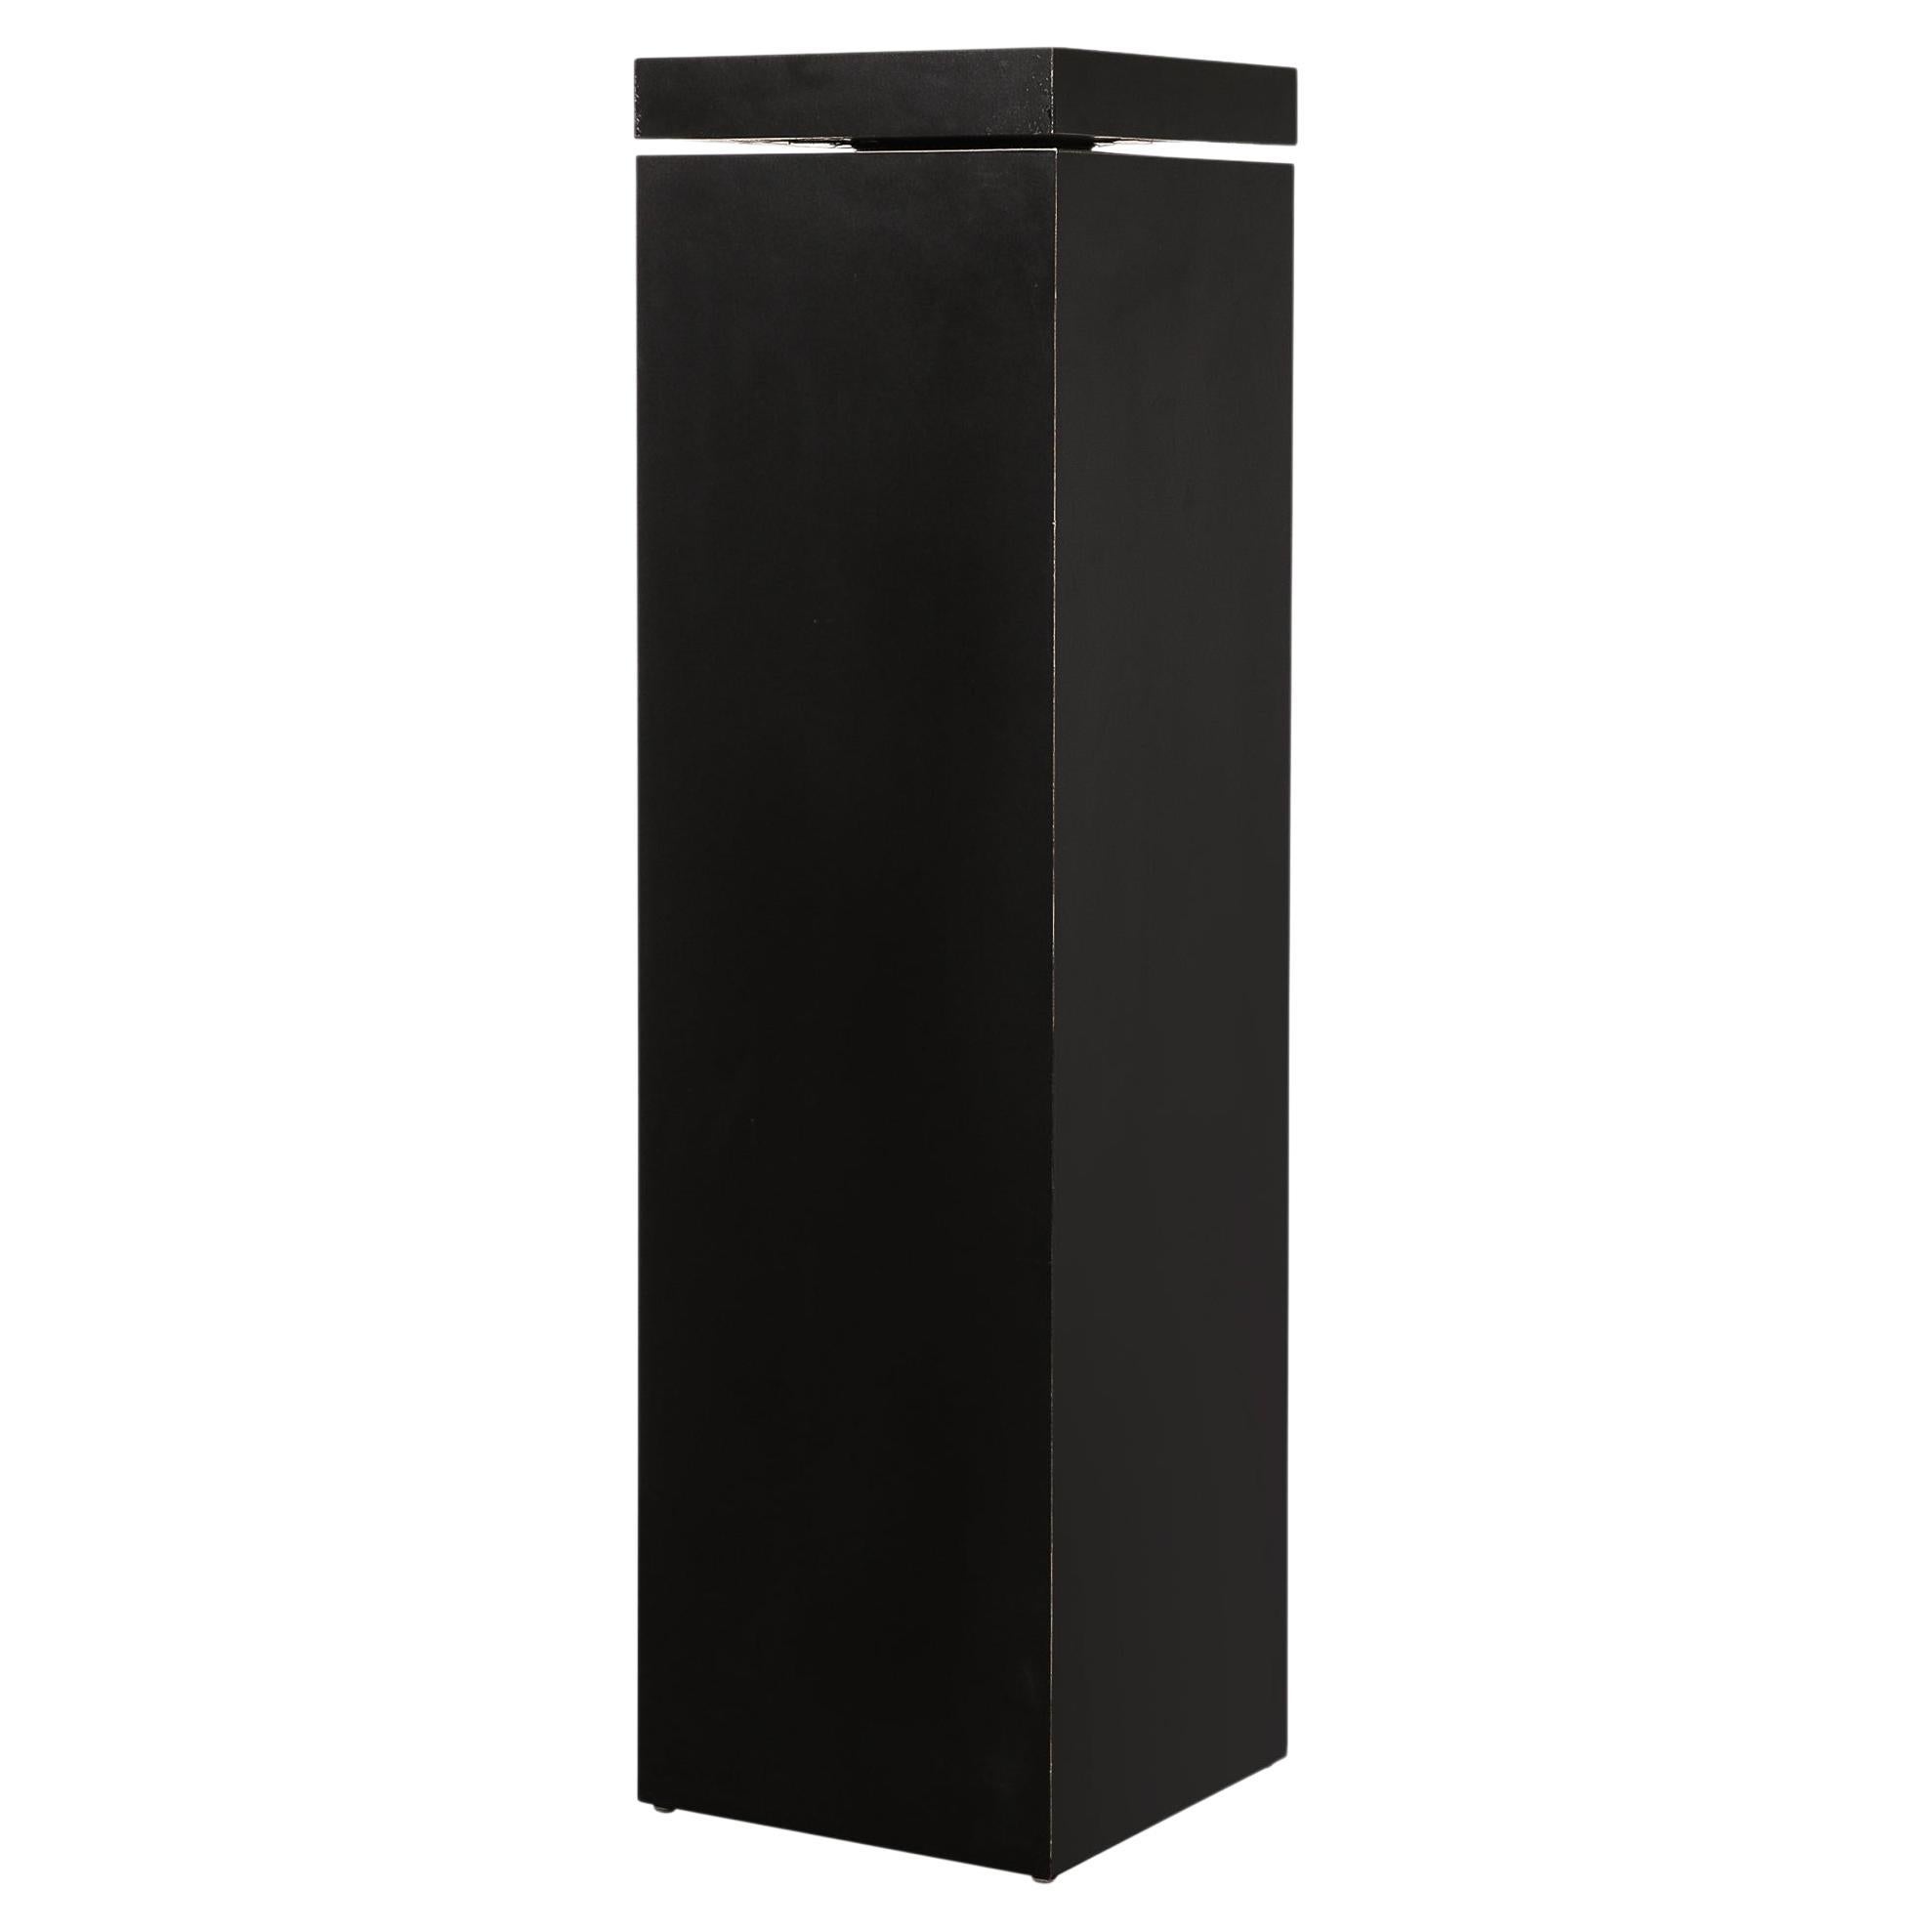 The Pedestal moderne rectiligne avec plateau pivotant noir mat 